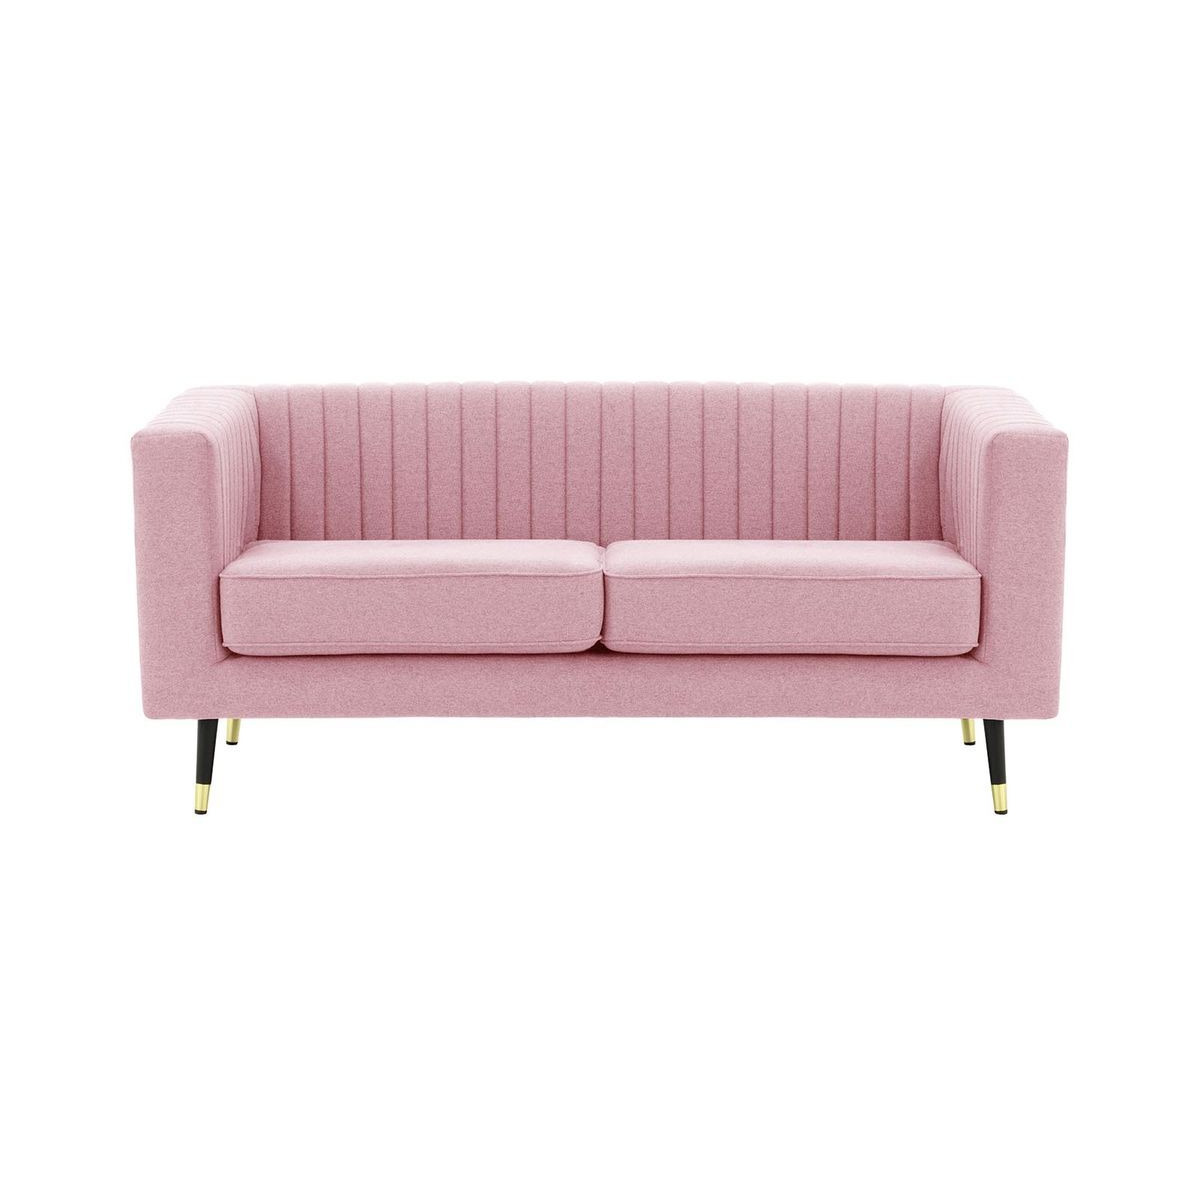 Slender 2 Seater Sofa, pink - image 1